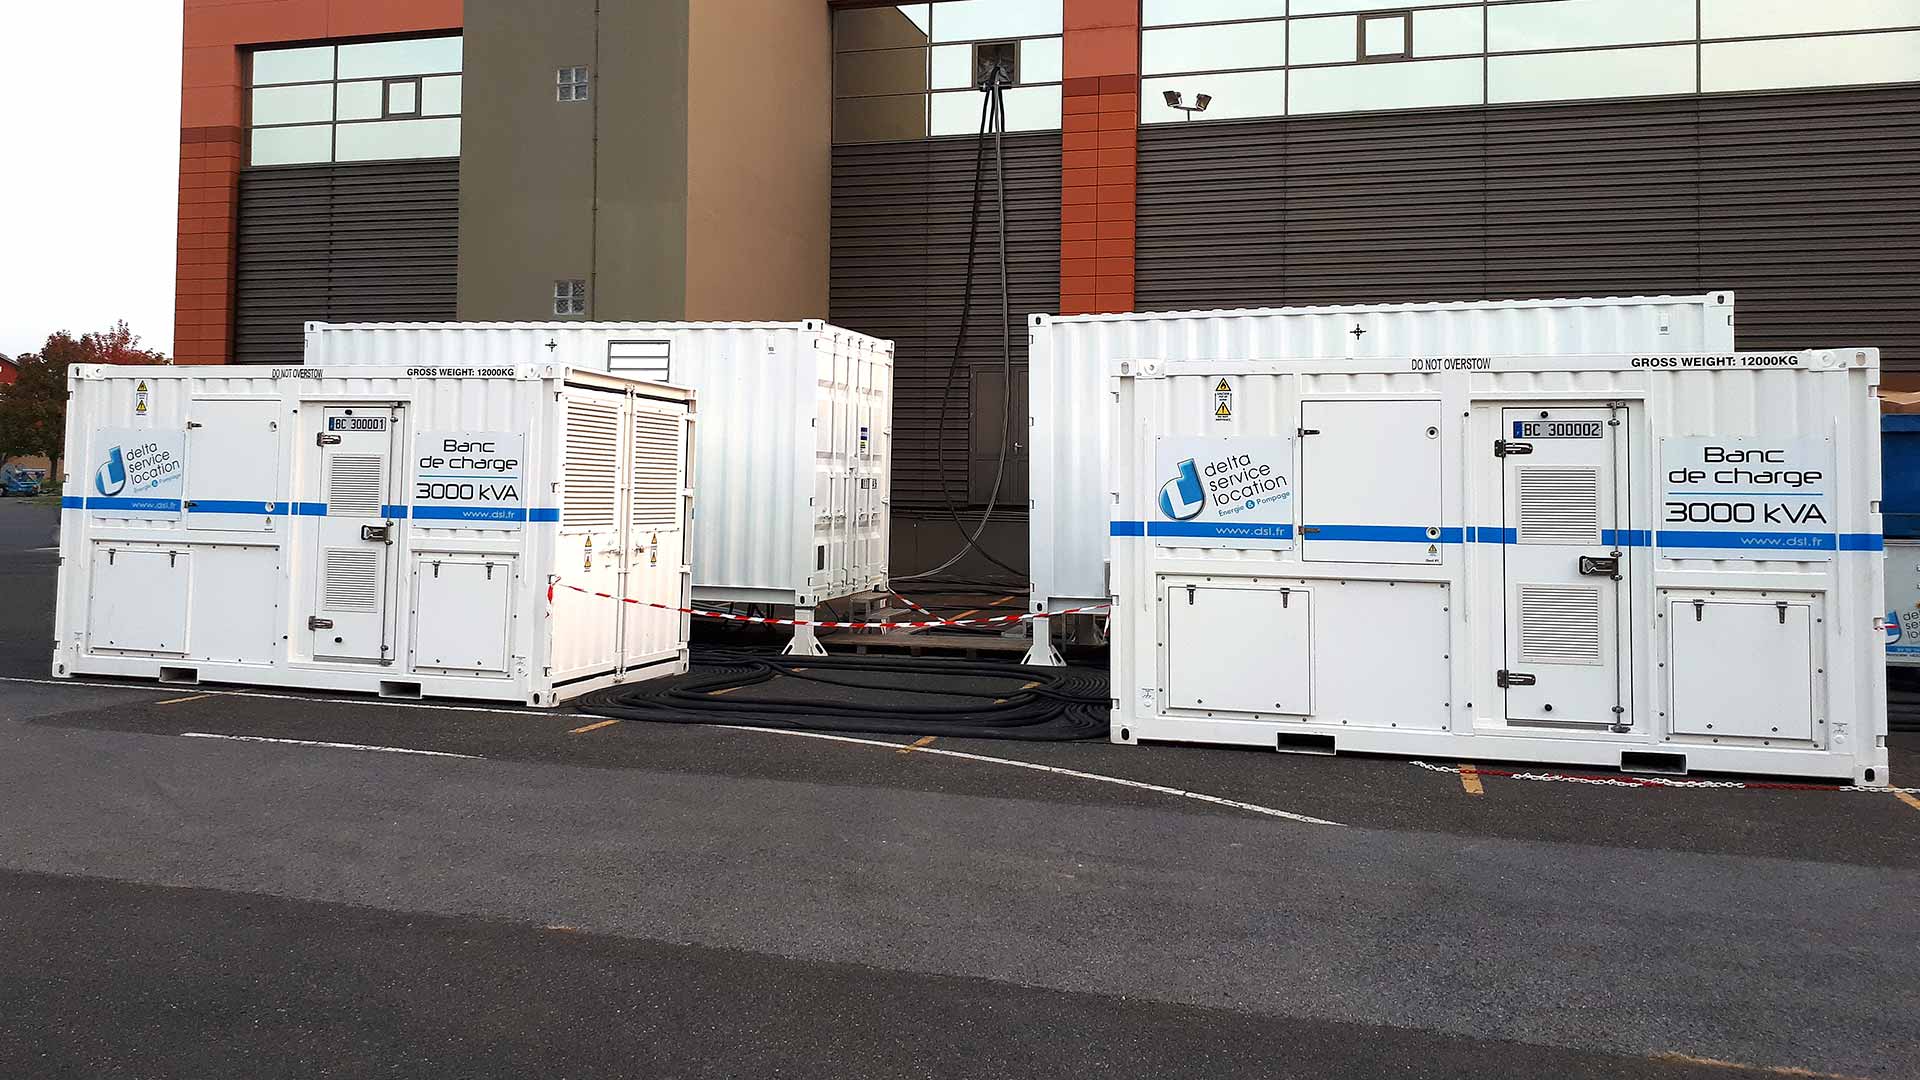 2 bancs de charge 3000 kVA avec 2 transformateurs devant un data center